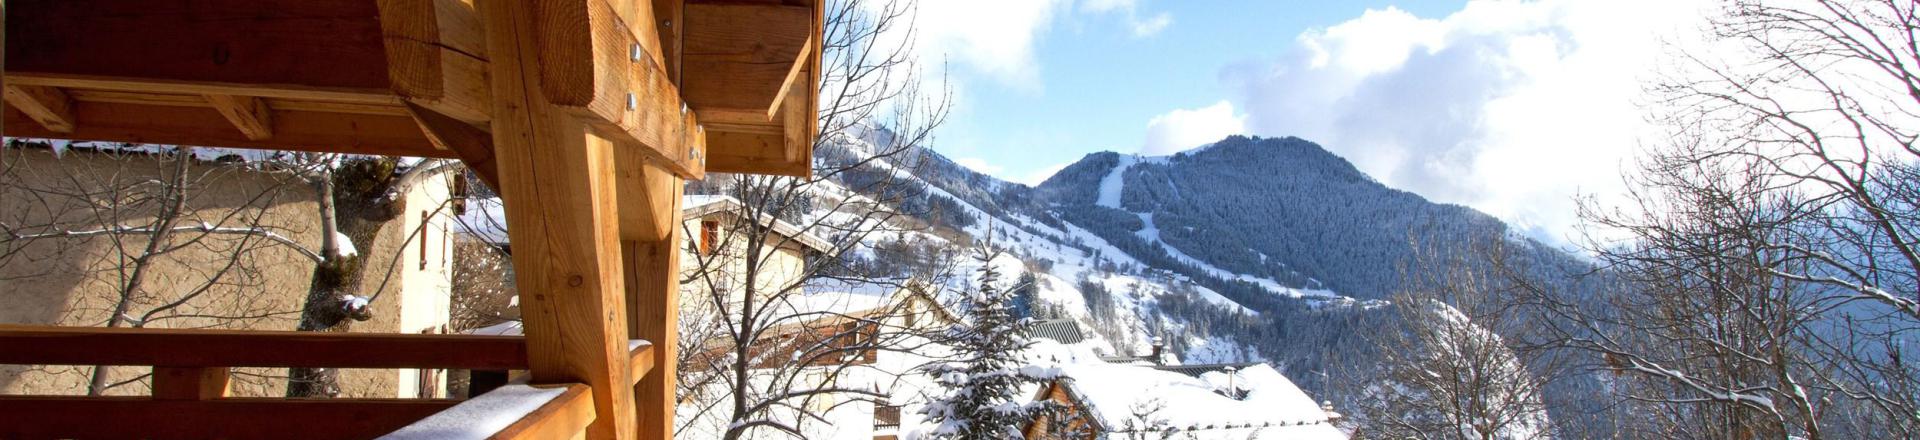 Skiverleih Chalet Nuance de Bleu - Alpe d'Huez - Draußen im Winter